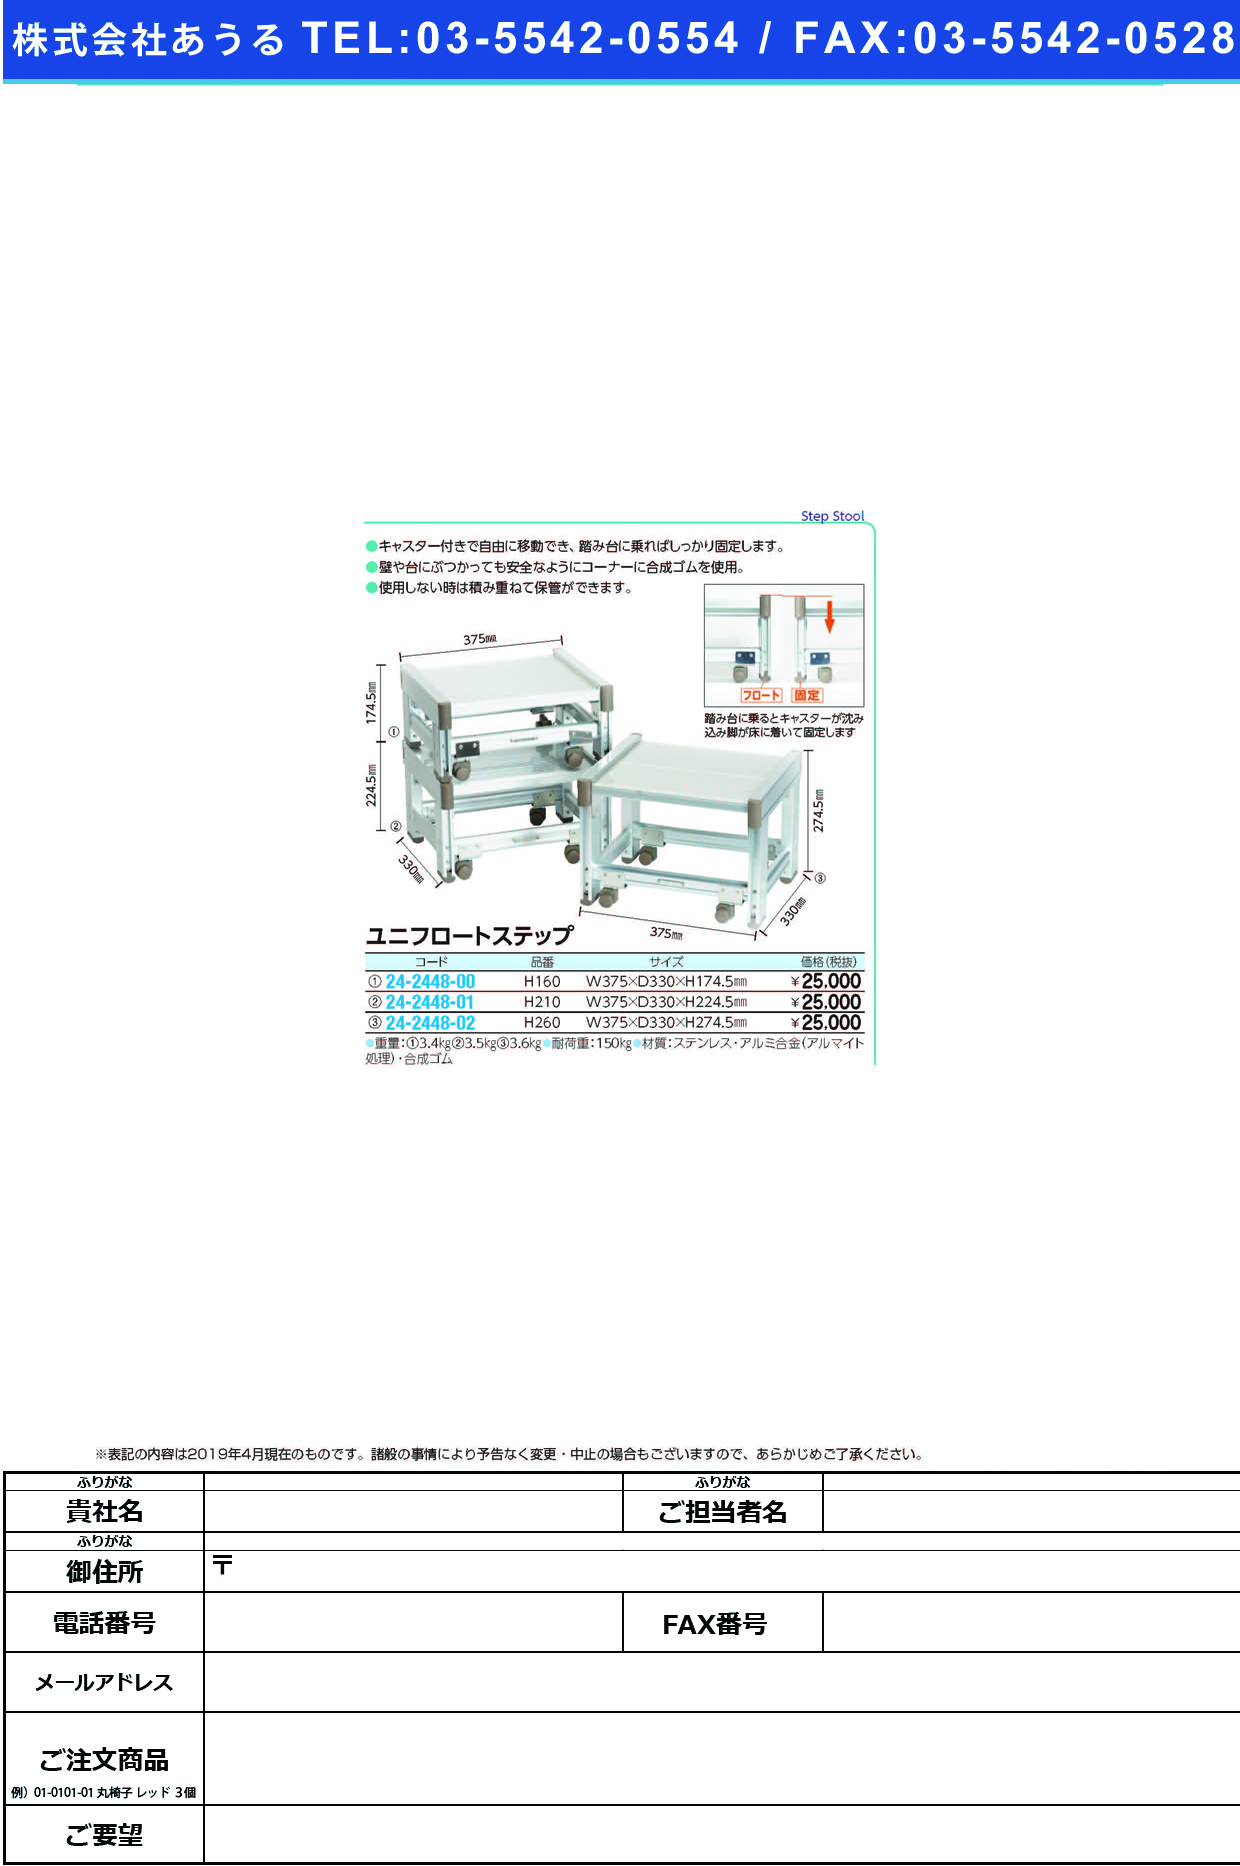 (24-2448-01)ユニフロートステップ H210 ﾕﾆﾌﾛｰﾄｽﾃｯﾌﾟ【1台単位】【2019年カタログ商品】